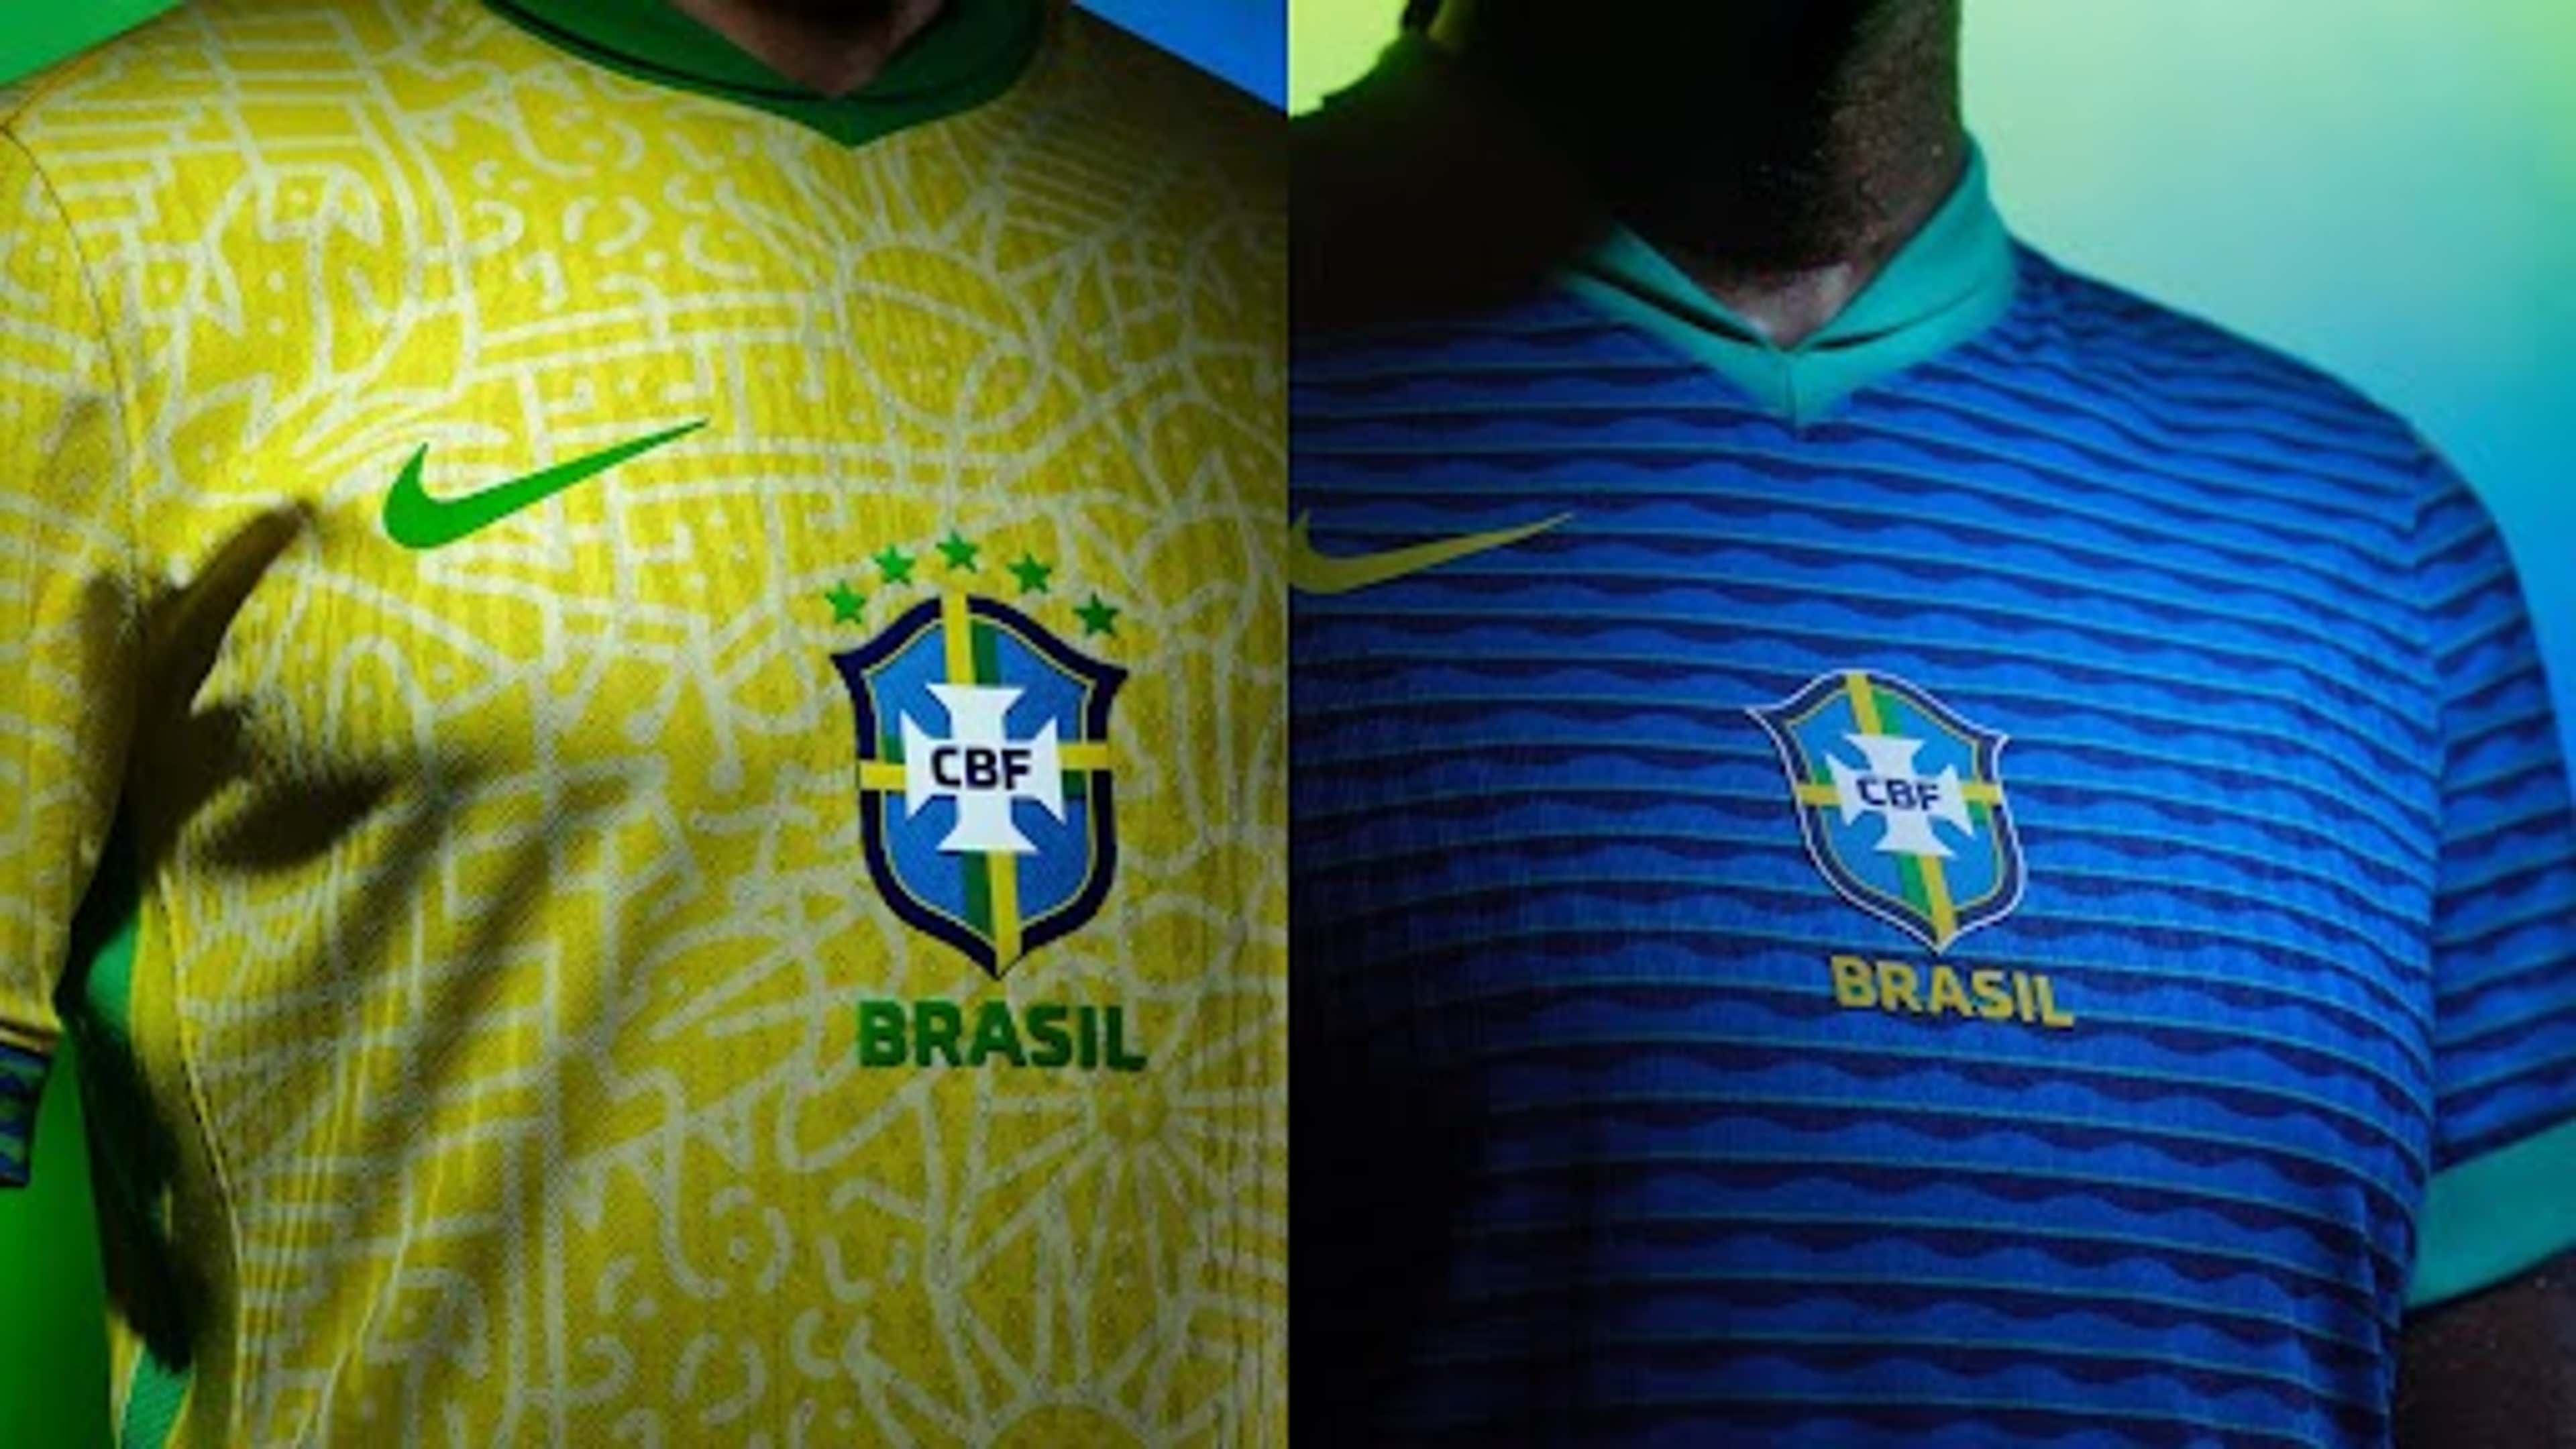 Camisa da Seleção Brasileira Azul em Oferta